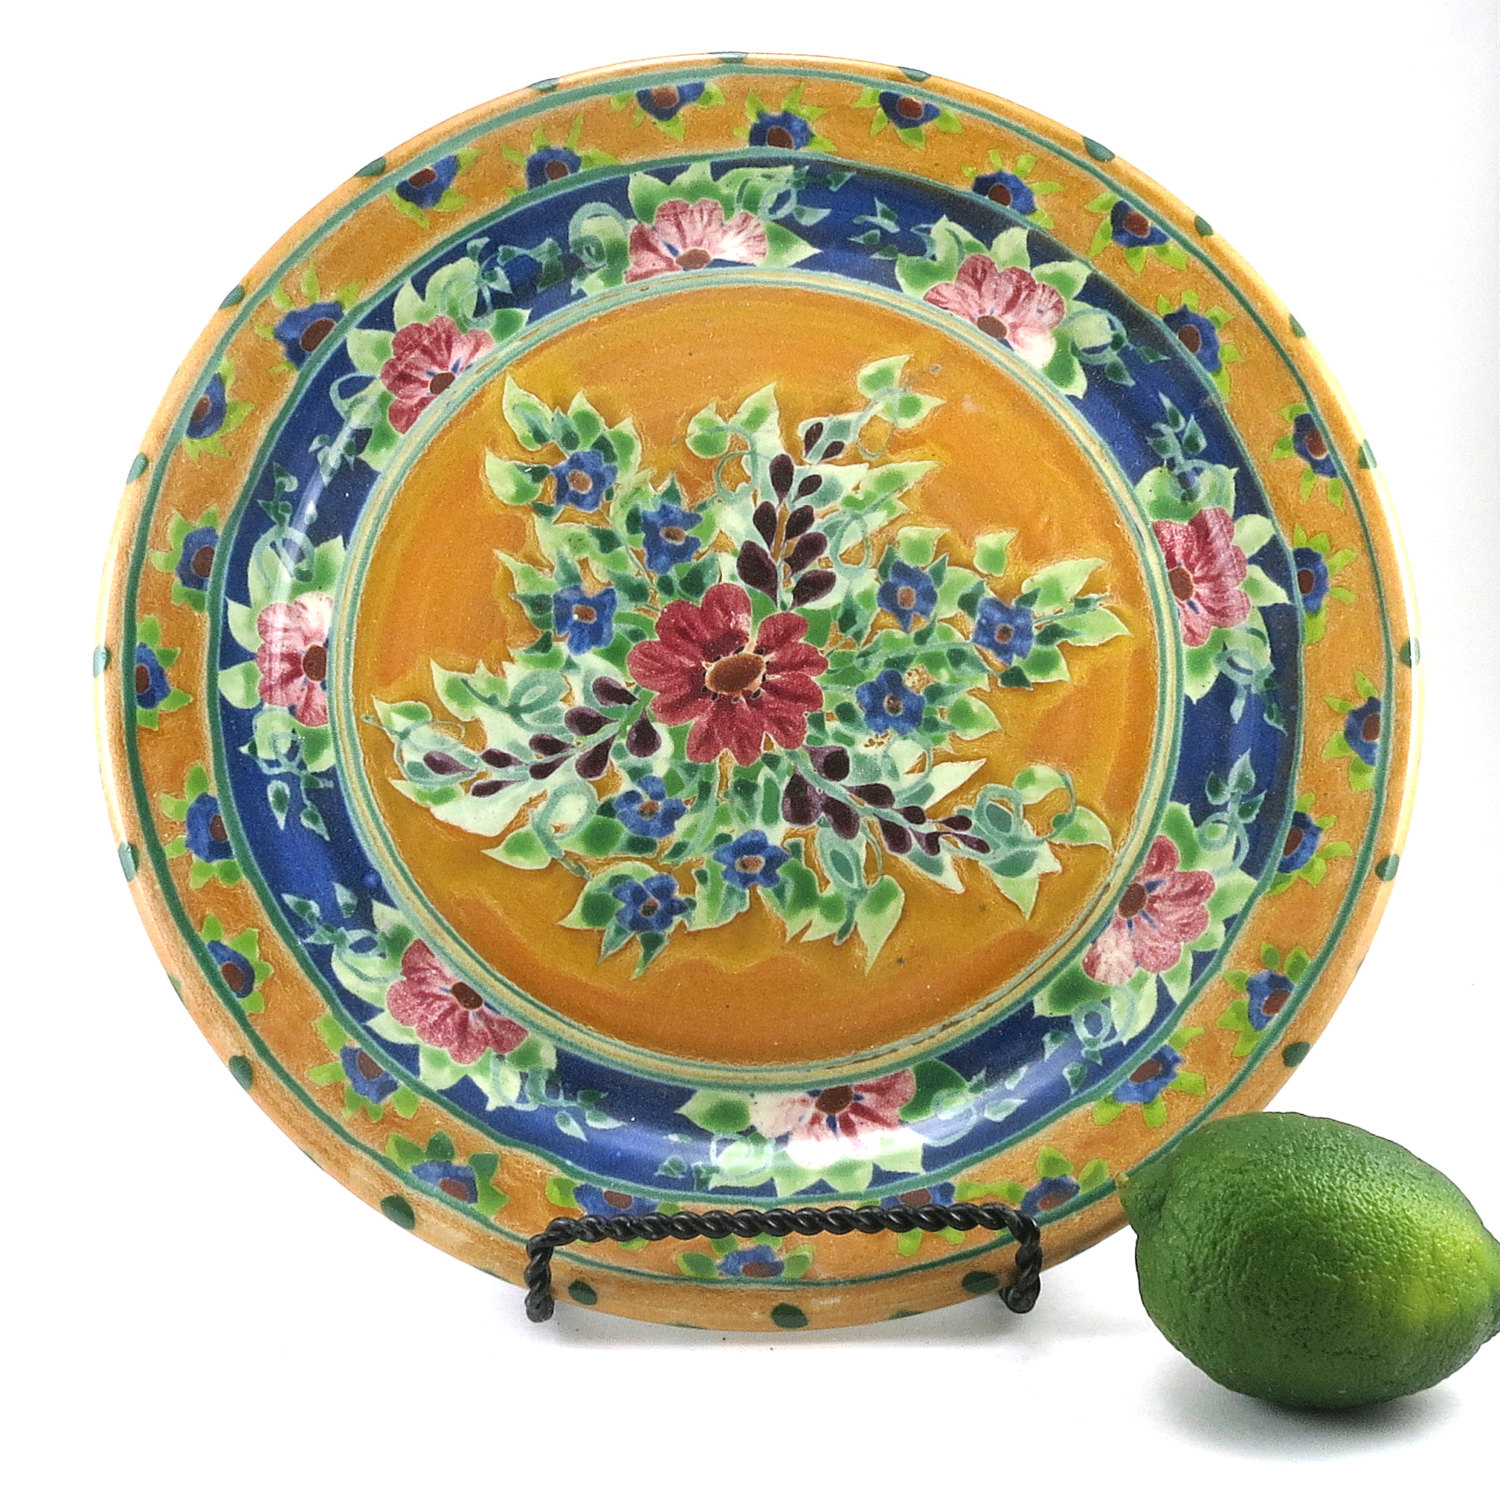 Kiln House Pottery – Sandy Kreyer's Floral Ceramic Plates | Artizan Made